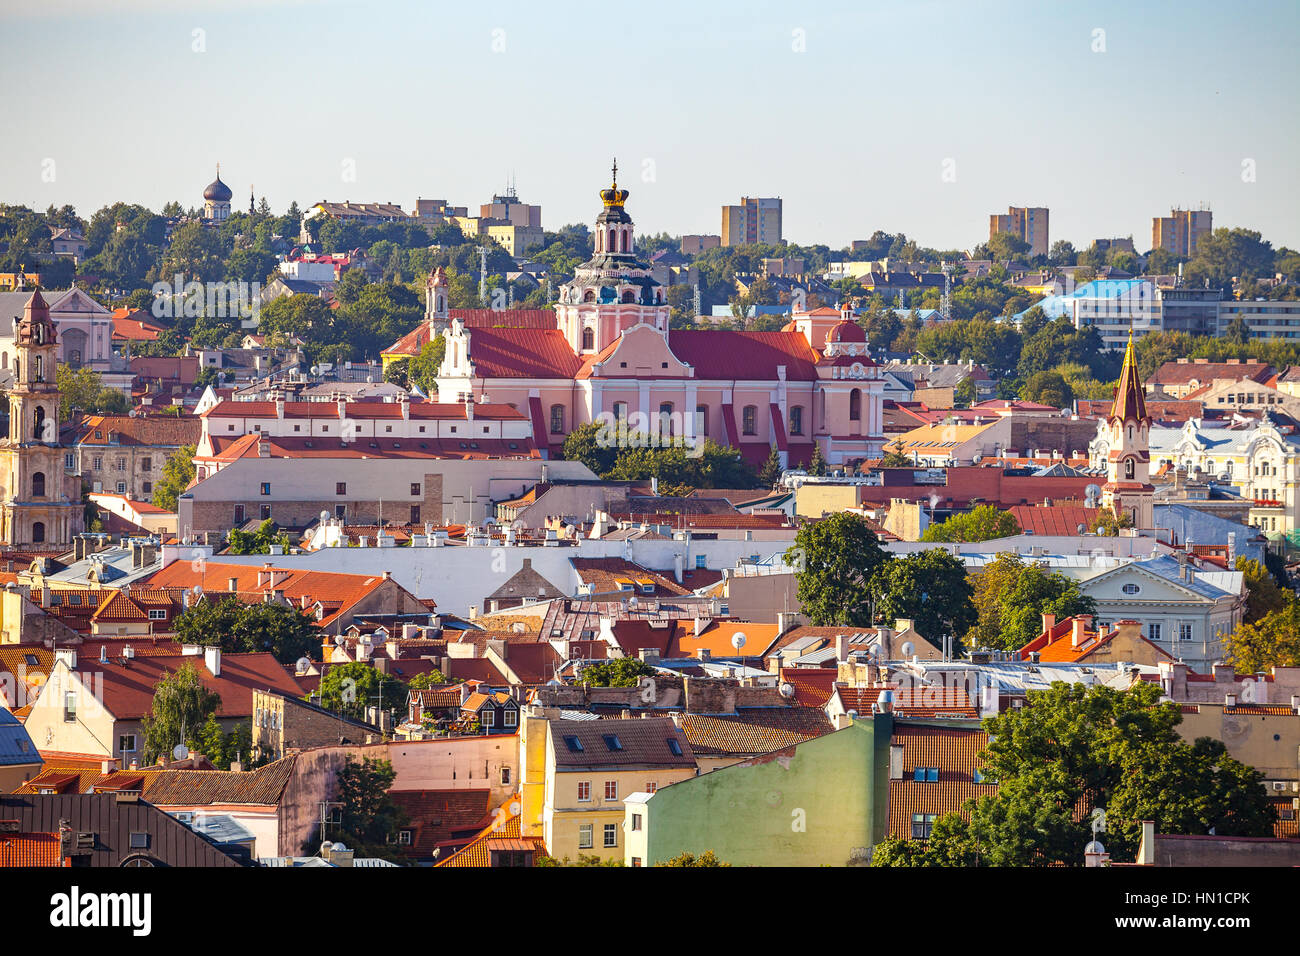 Литва столица какой страны. Литва столица Вильнюс. Литва старый город. Столица Литвы — город Вильнюс. Фотография Литва столица Вильнюс.